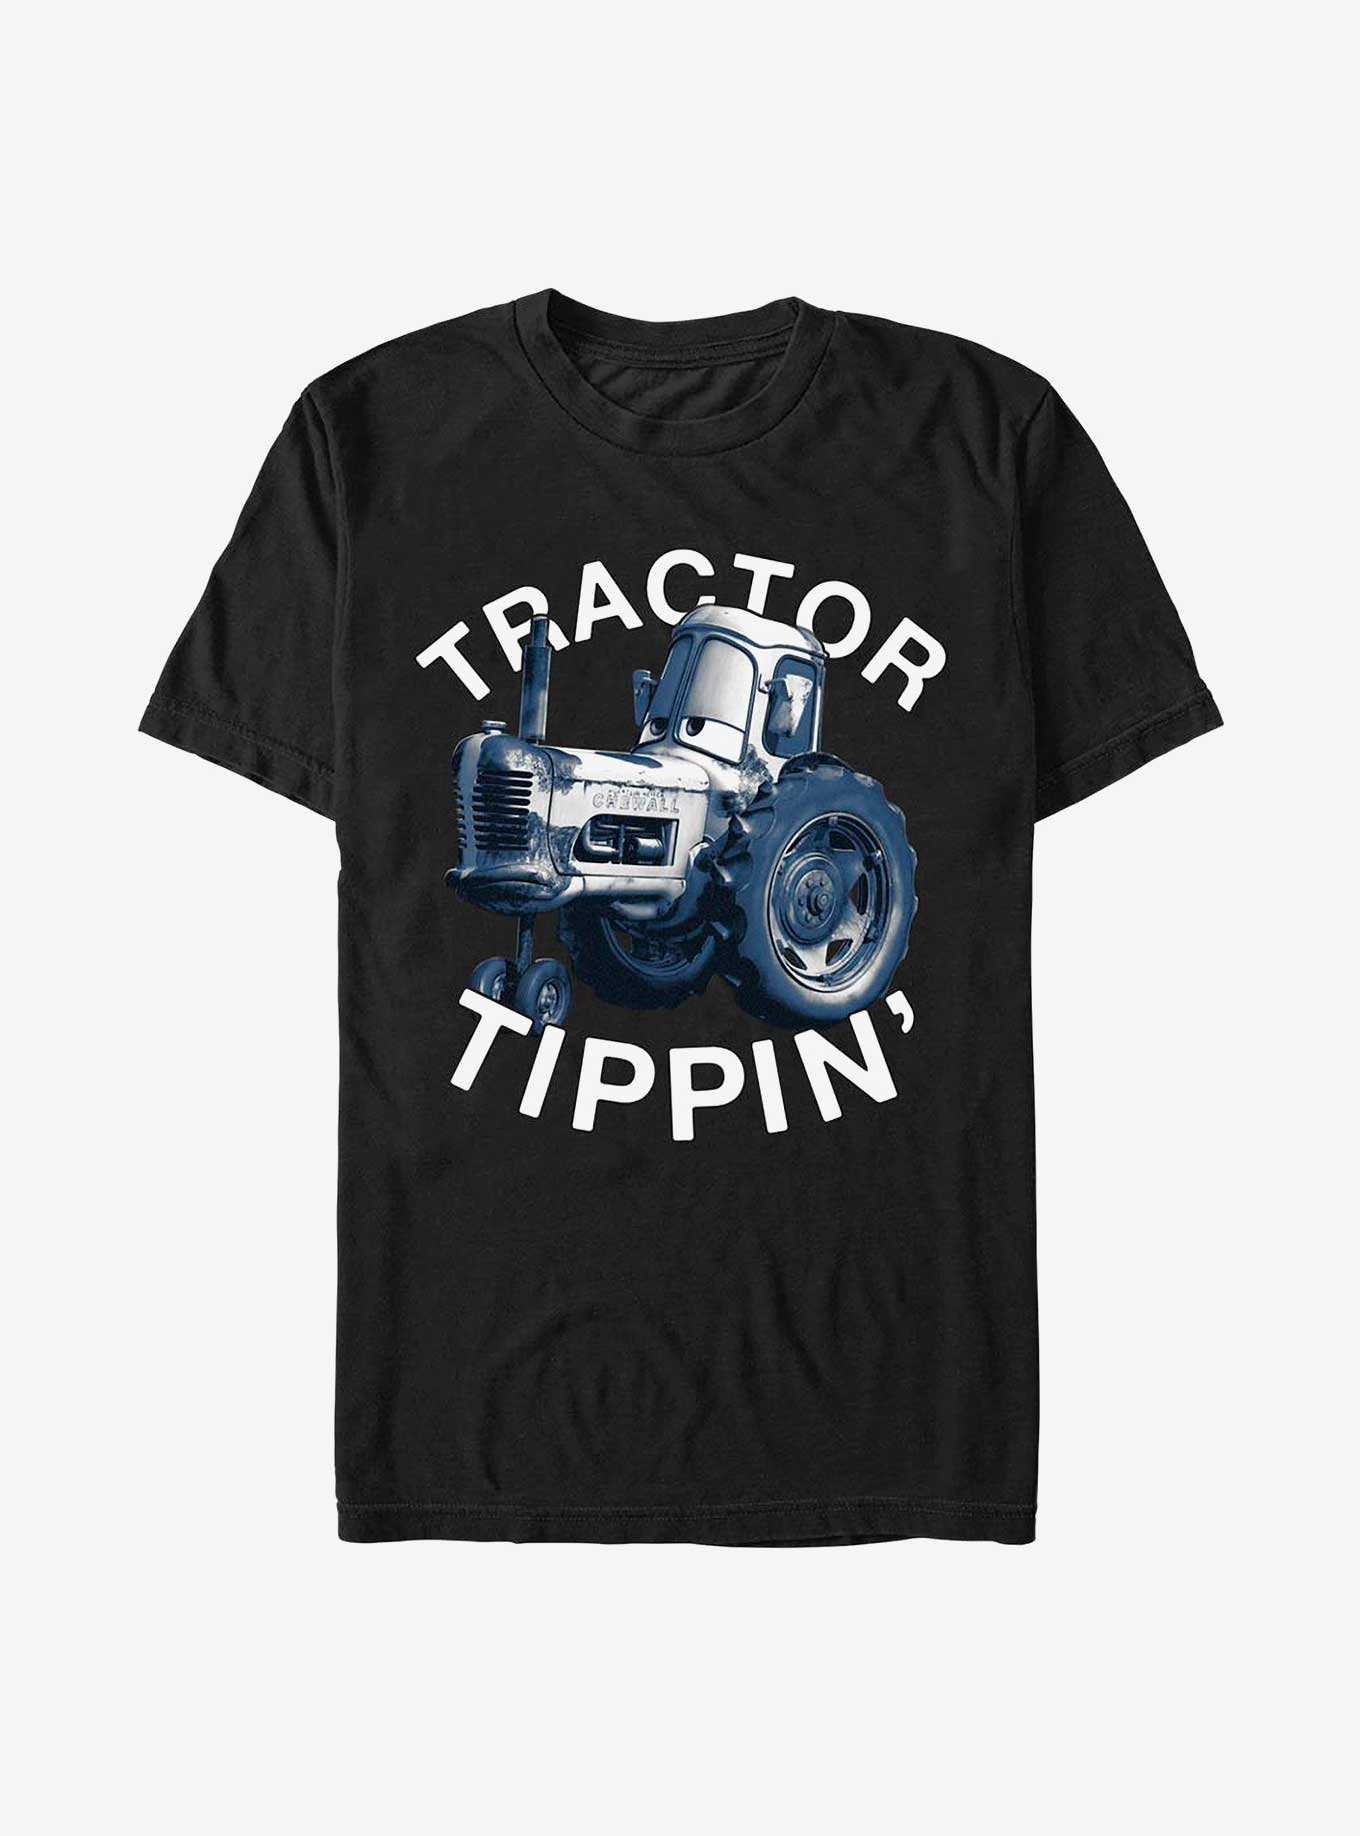 Disney Pixar Cars Tractor Tippin T-Shirt, , hi-res